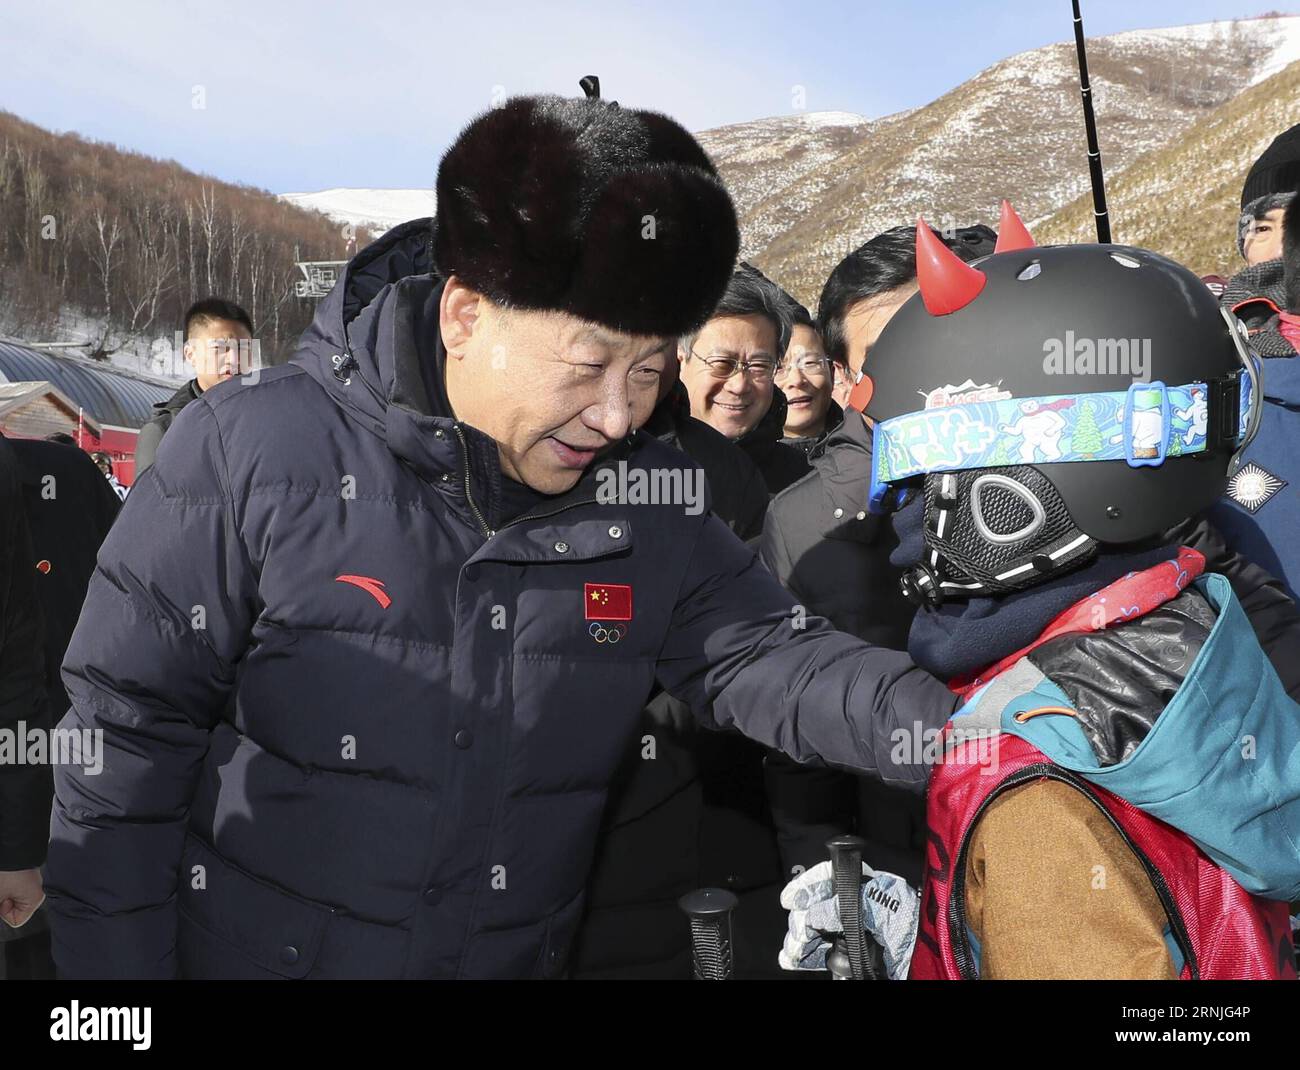 (170123) -- ZHANGJIAKOU, 23. Januar 2017 -- der chinesische Präsident Xi Jinping (L) ermutigt ein Kind, das Ski-Winter-Camp im Skigebiet Genting zu besuchen, während er die Vorbereitungsarbeiten für die Olympischen Winterspiele 2022 in Peking in der Stadt Zhangjiakou, Provinz Hebei in Nordchina, am 23. Januar 2017 inspiziert. ) (lfj) CHINA-XI JINPING-2022 WINTER OLYMPICS-INSPECTION (CN) LanxHongguang PUBLICATIONxNOTxINxCHN Zhangjiakou 23. Januar 2017 der chinesische Präsident Xi Jinping l ermutigt ein Kind, das Ski-Winter-Camp IM Skigebiet Genting besucht, während er die Vorbereitungsarbeiten für die Olympischen Winterspiele 2022 in Peking in der Stadt Zhangjiakou Nort inspiziert Stockfoto